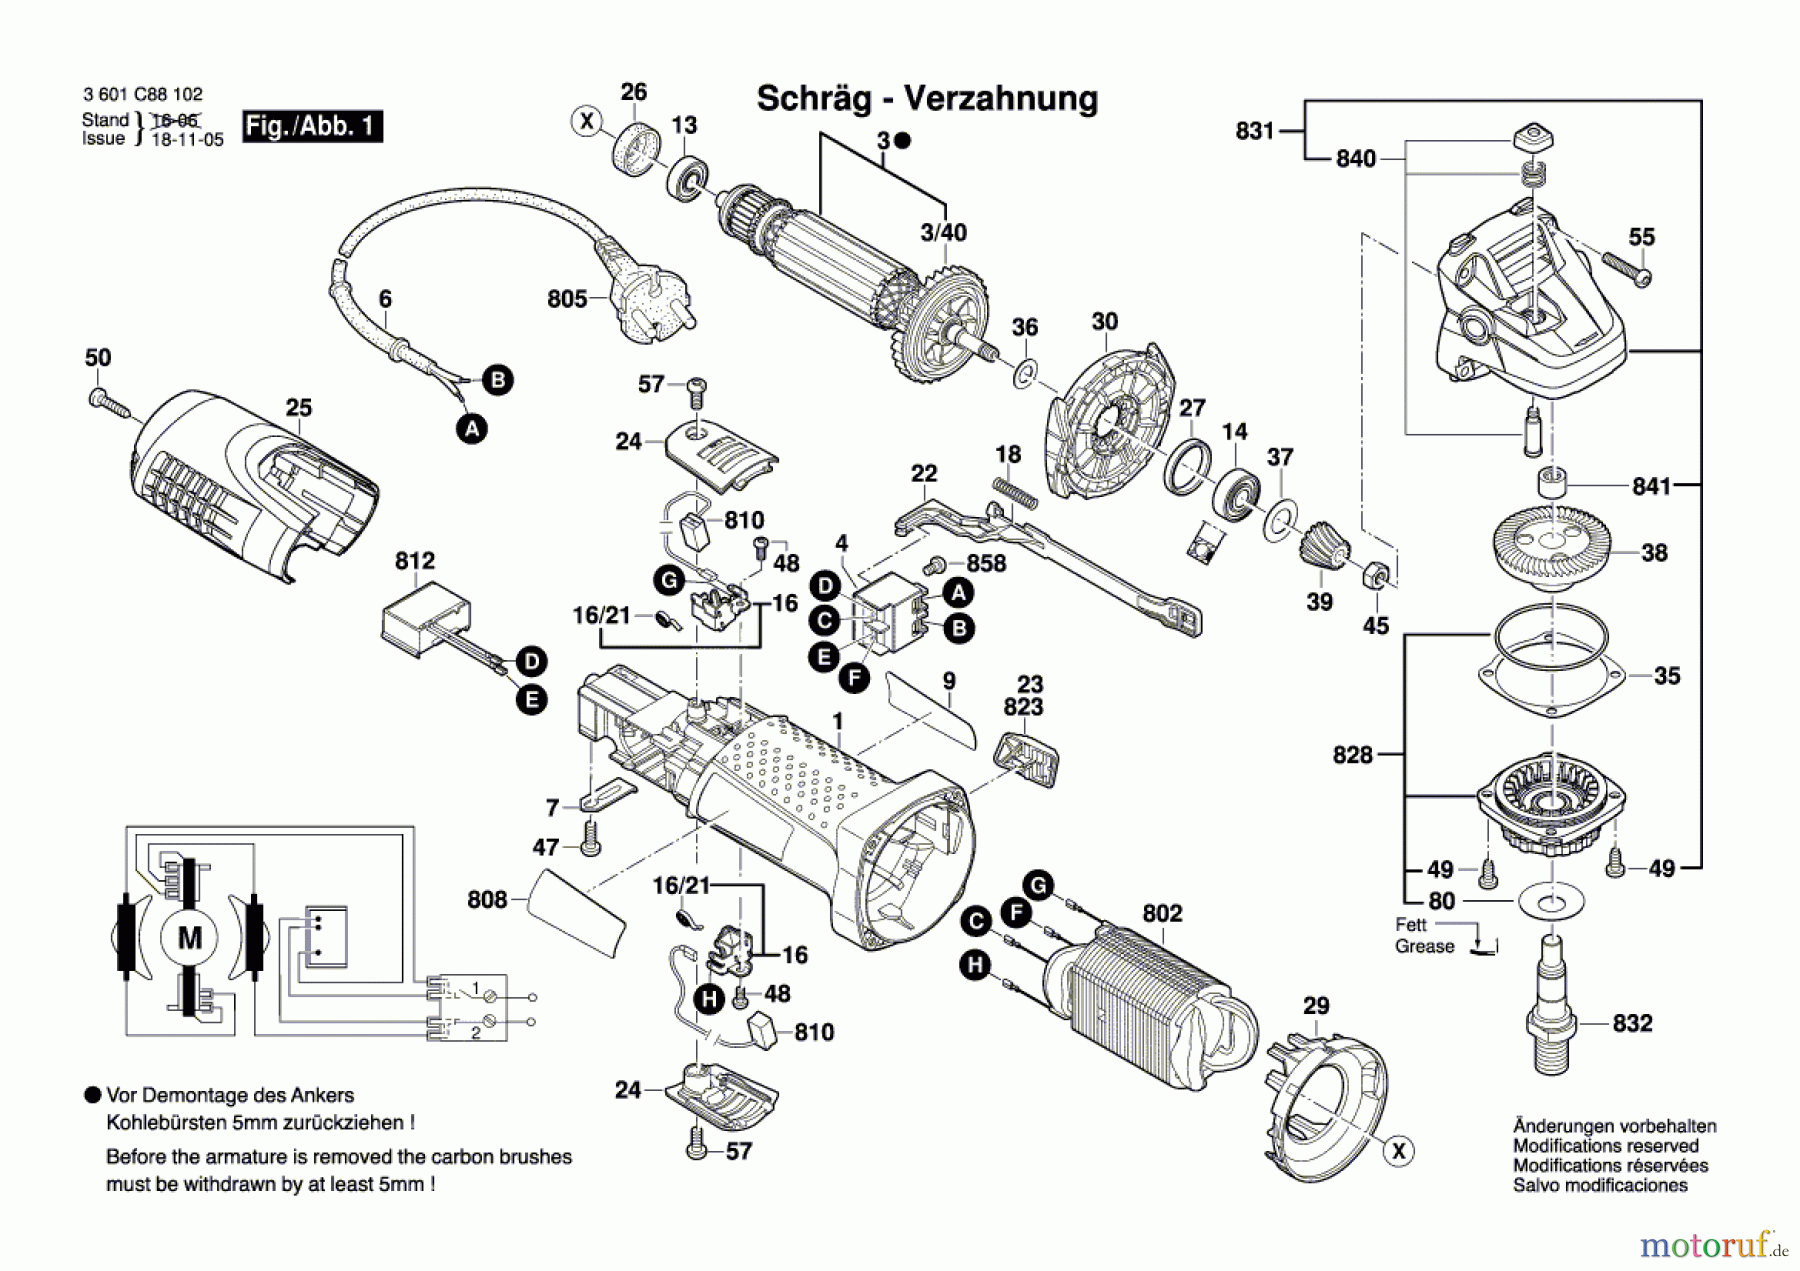  Bosch Werkzeug Winkelschleifer GWS 7-125 Seite 1